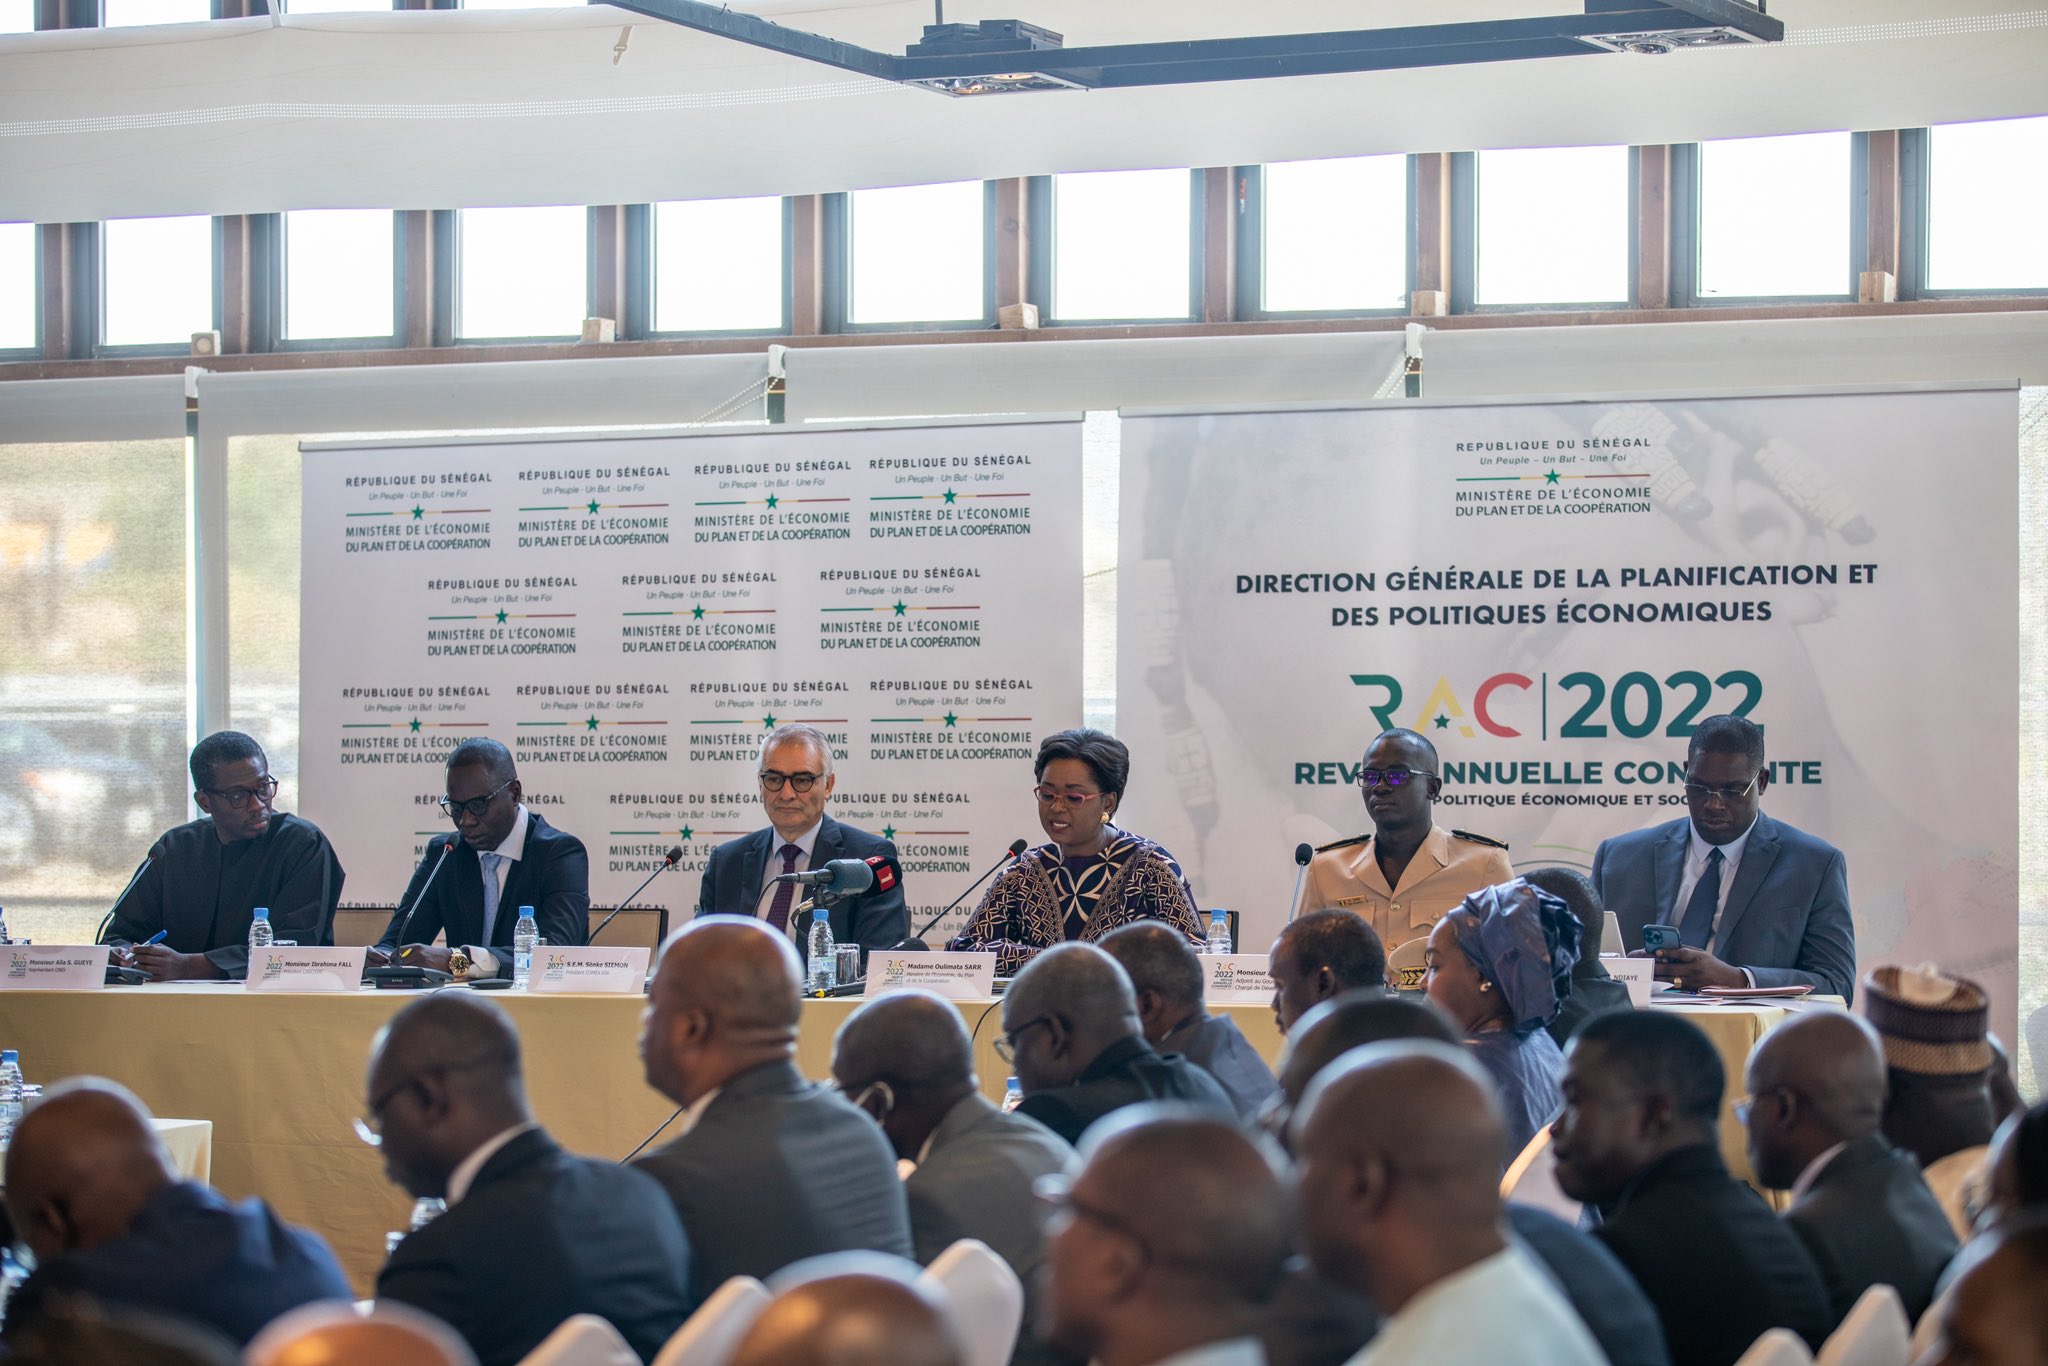  Revue annuelle conjointe 2021 : le gouvernement sénégalais réalise « des performances économiques en 2021 » 